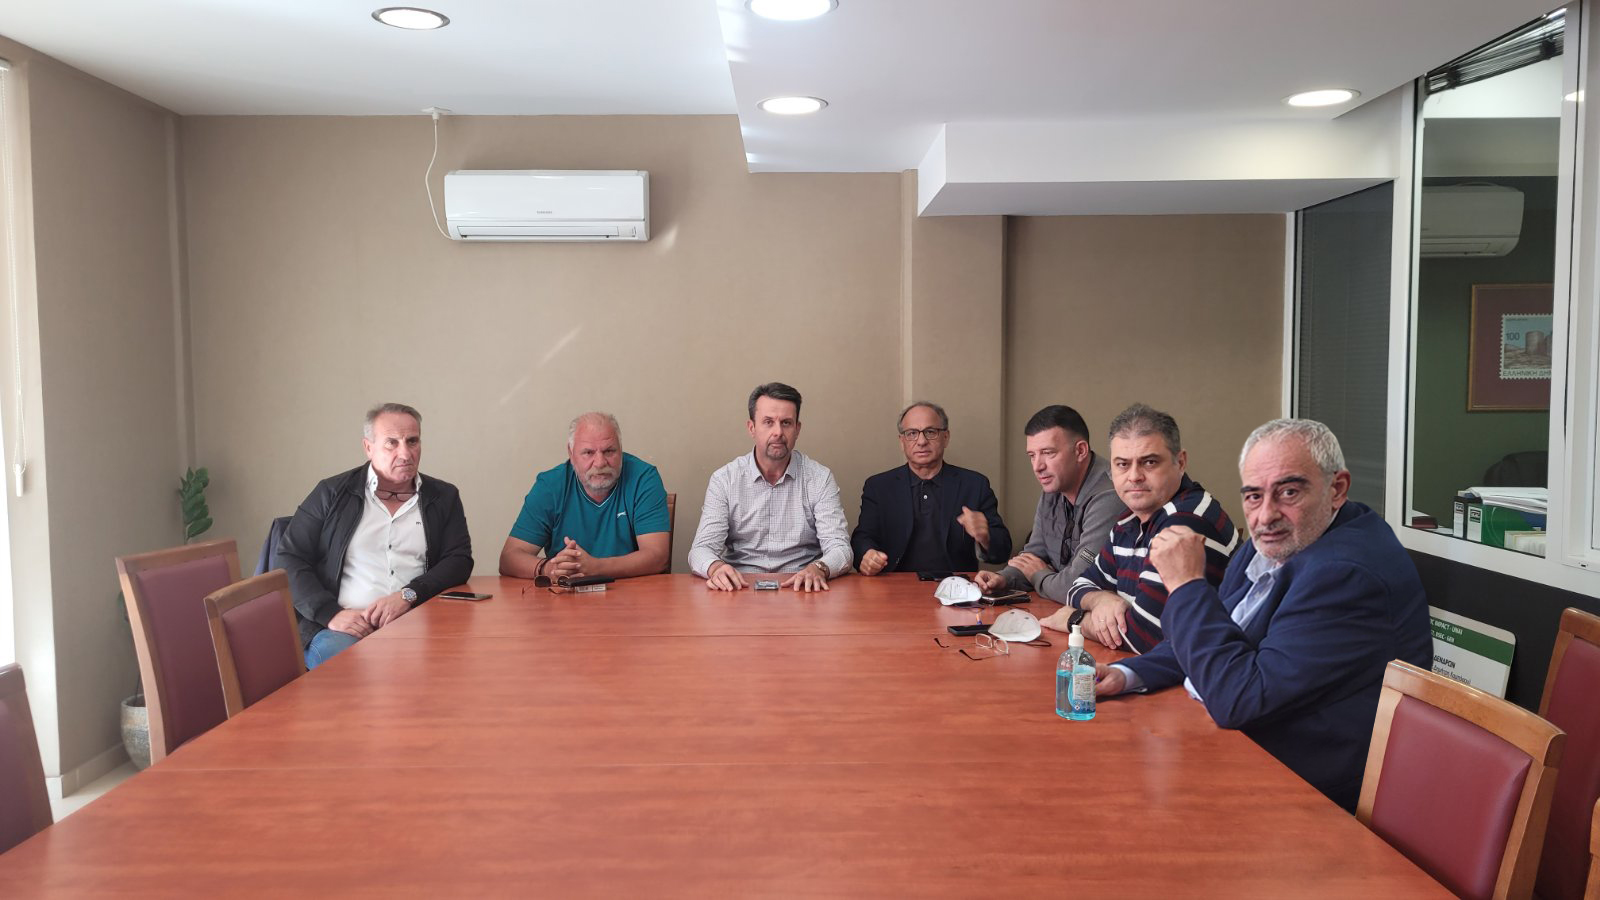 Δήμος Άργους Μυκηνών: Κρας τεστ η επερχόμενη κακοκαιρία – Συντονιστική σύσκεψη εν όψει χειμερινής περιόδου